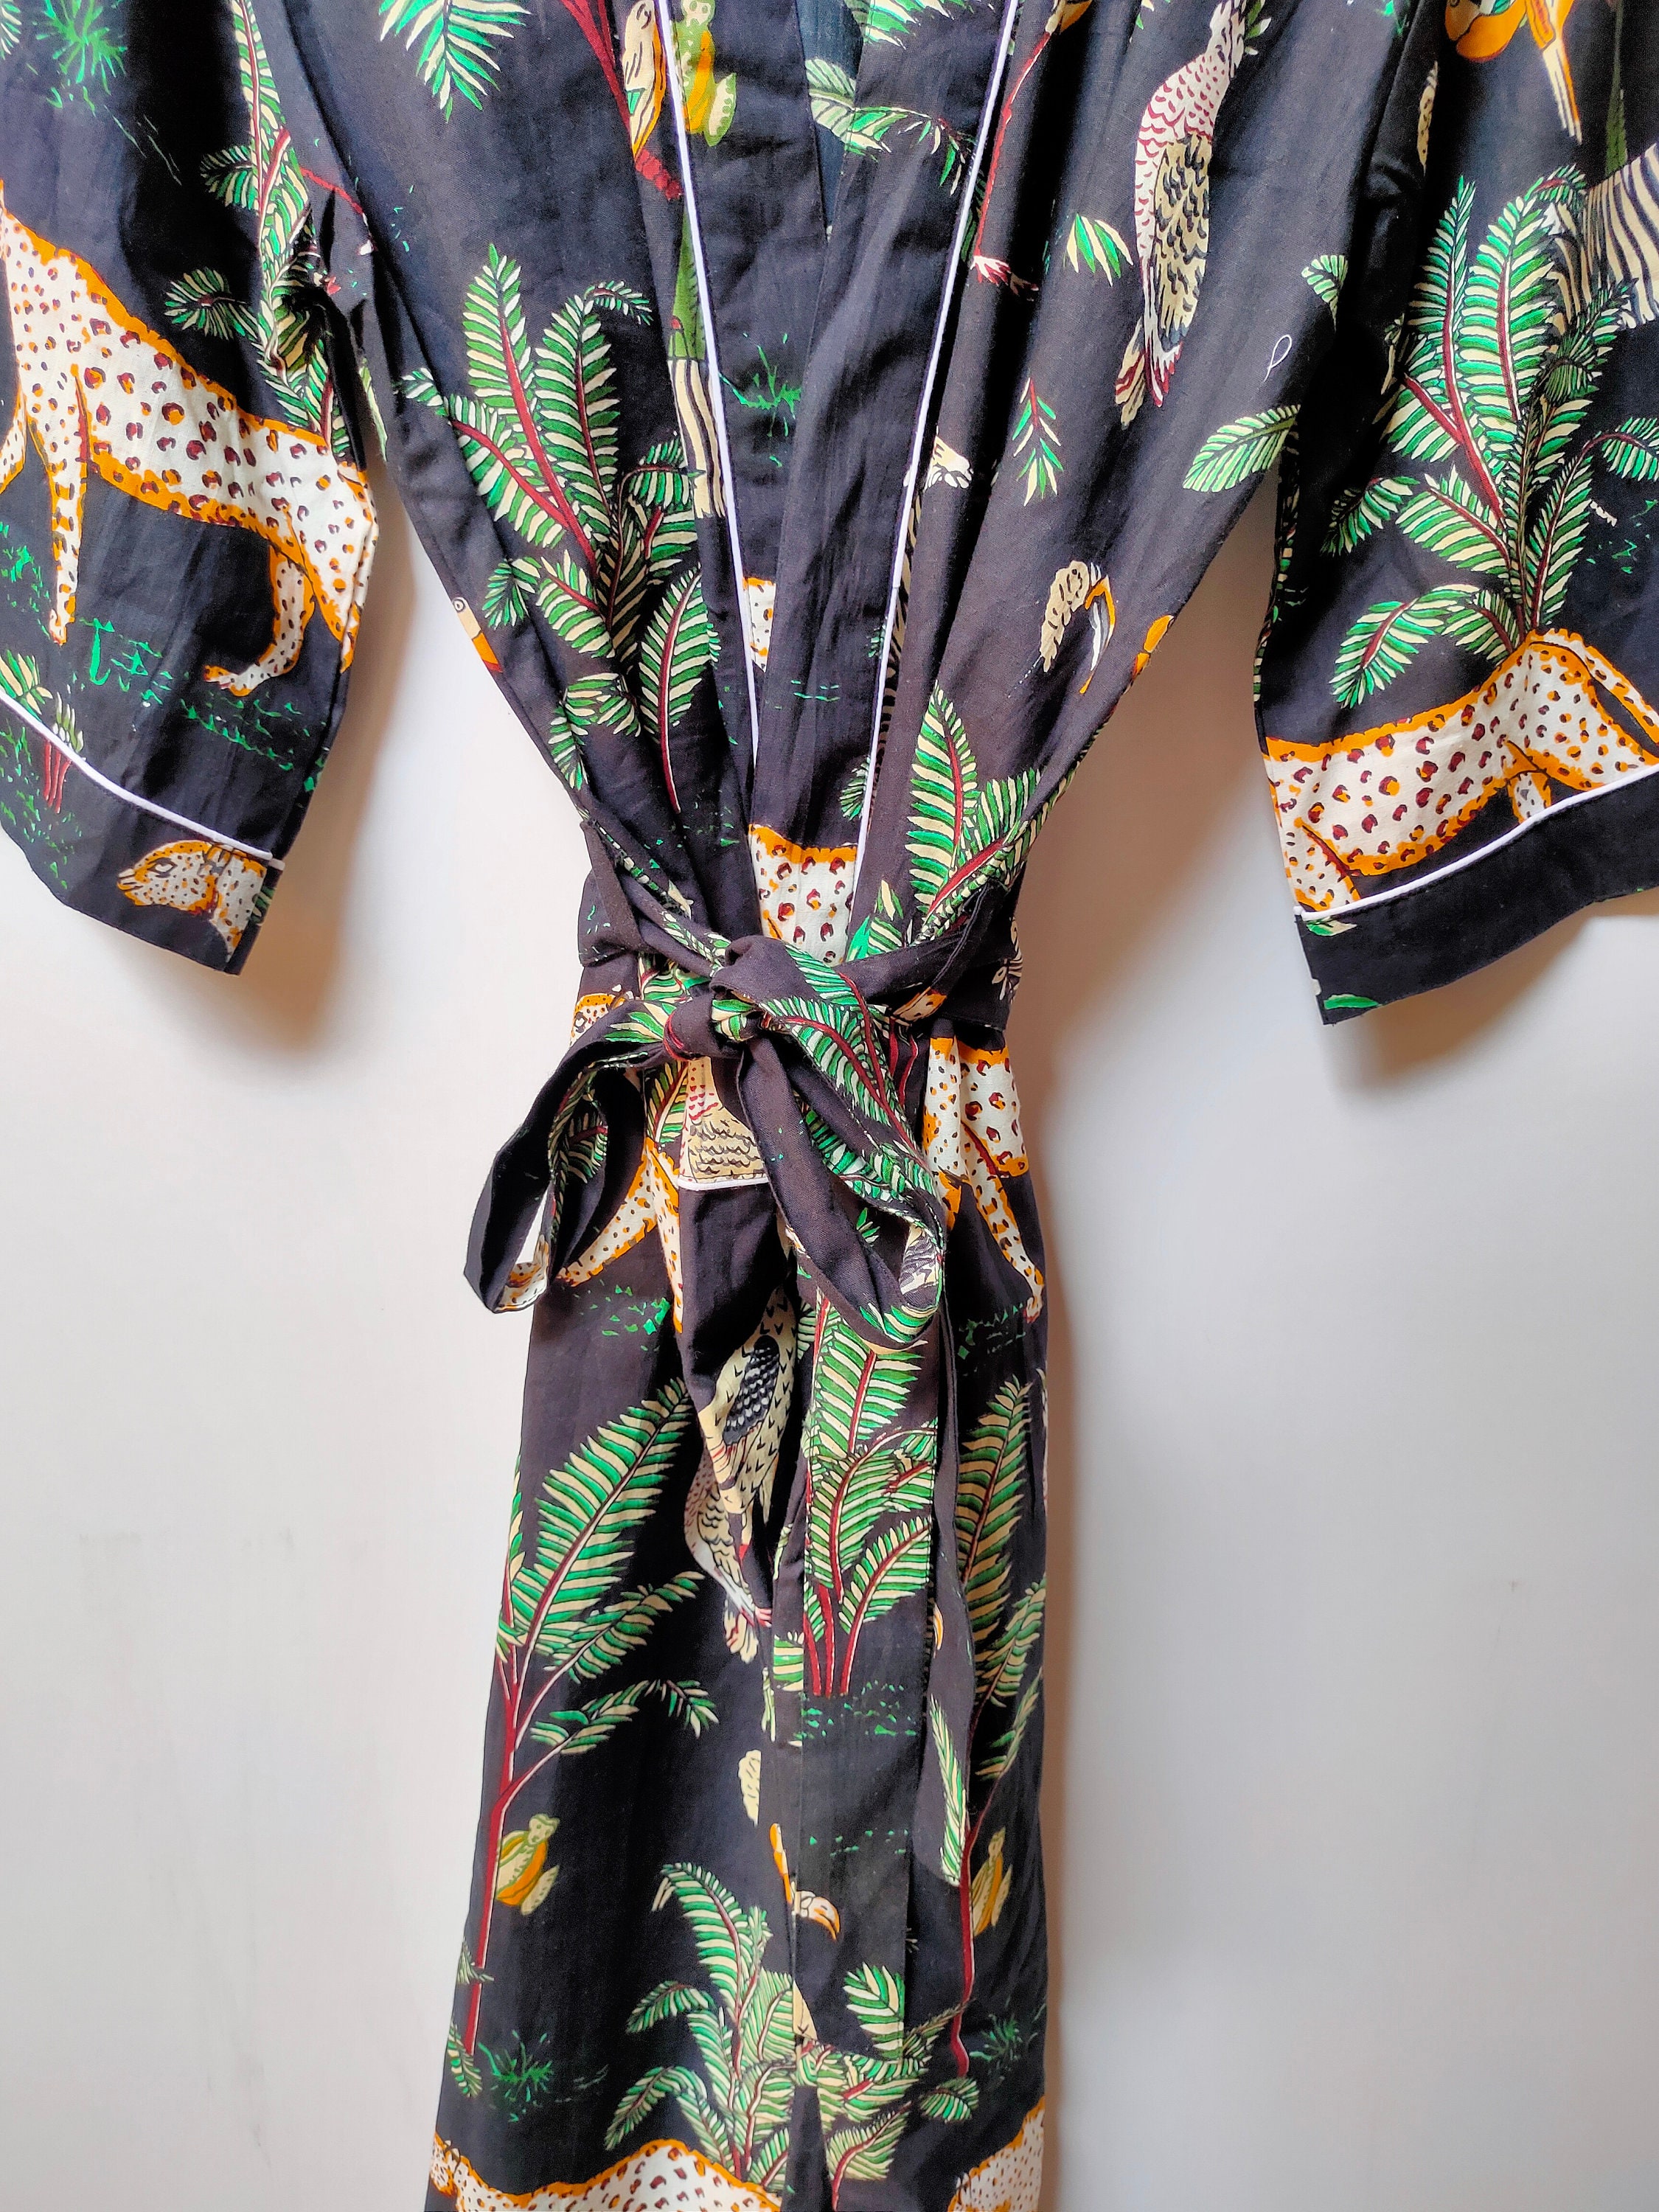 Cotton Floral Print Kimono 100% Cotton Kimono Indian Kimono - Etsy UK